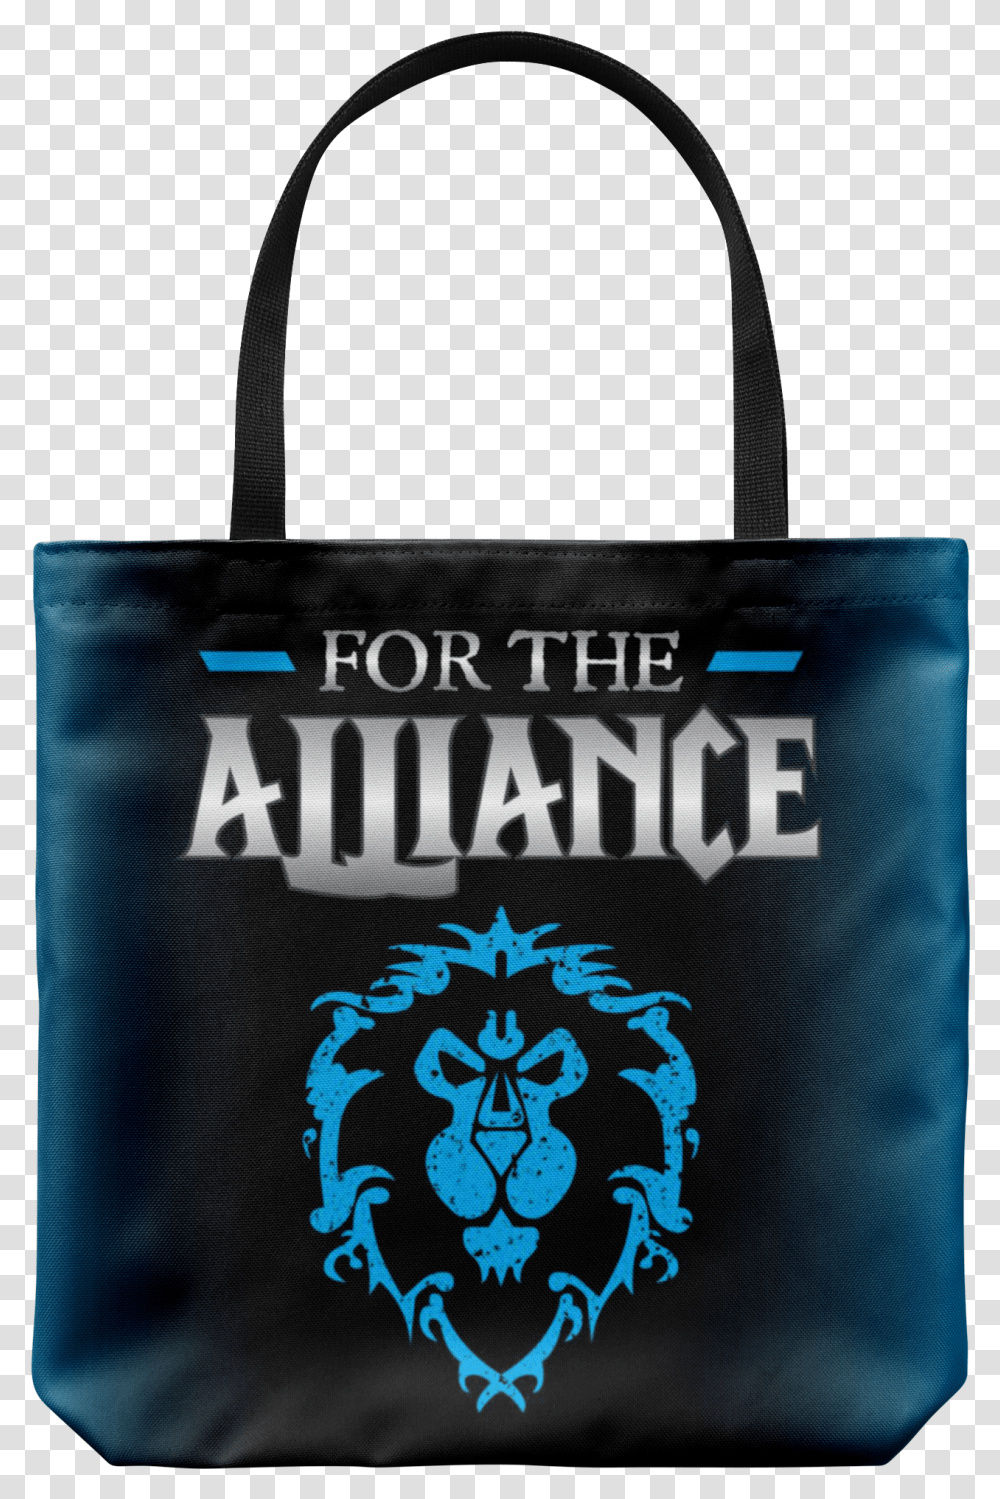 World Of Warcraft Quotfor The Alliance Warcraft Horde And Alliance, Bag, Tote Bag, Shopping Bag, Handbag Transparent Png